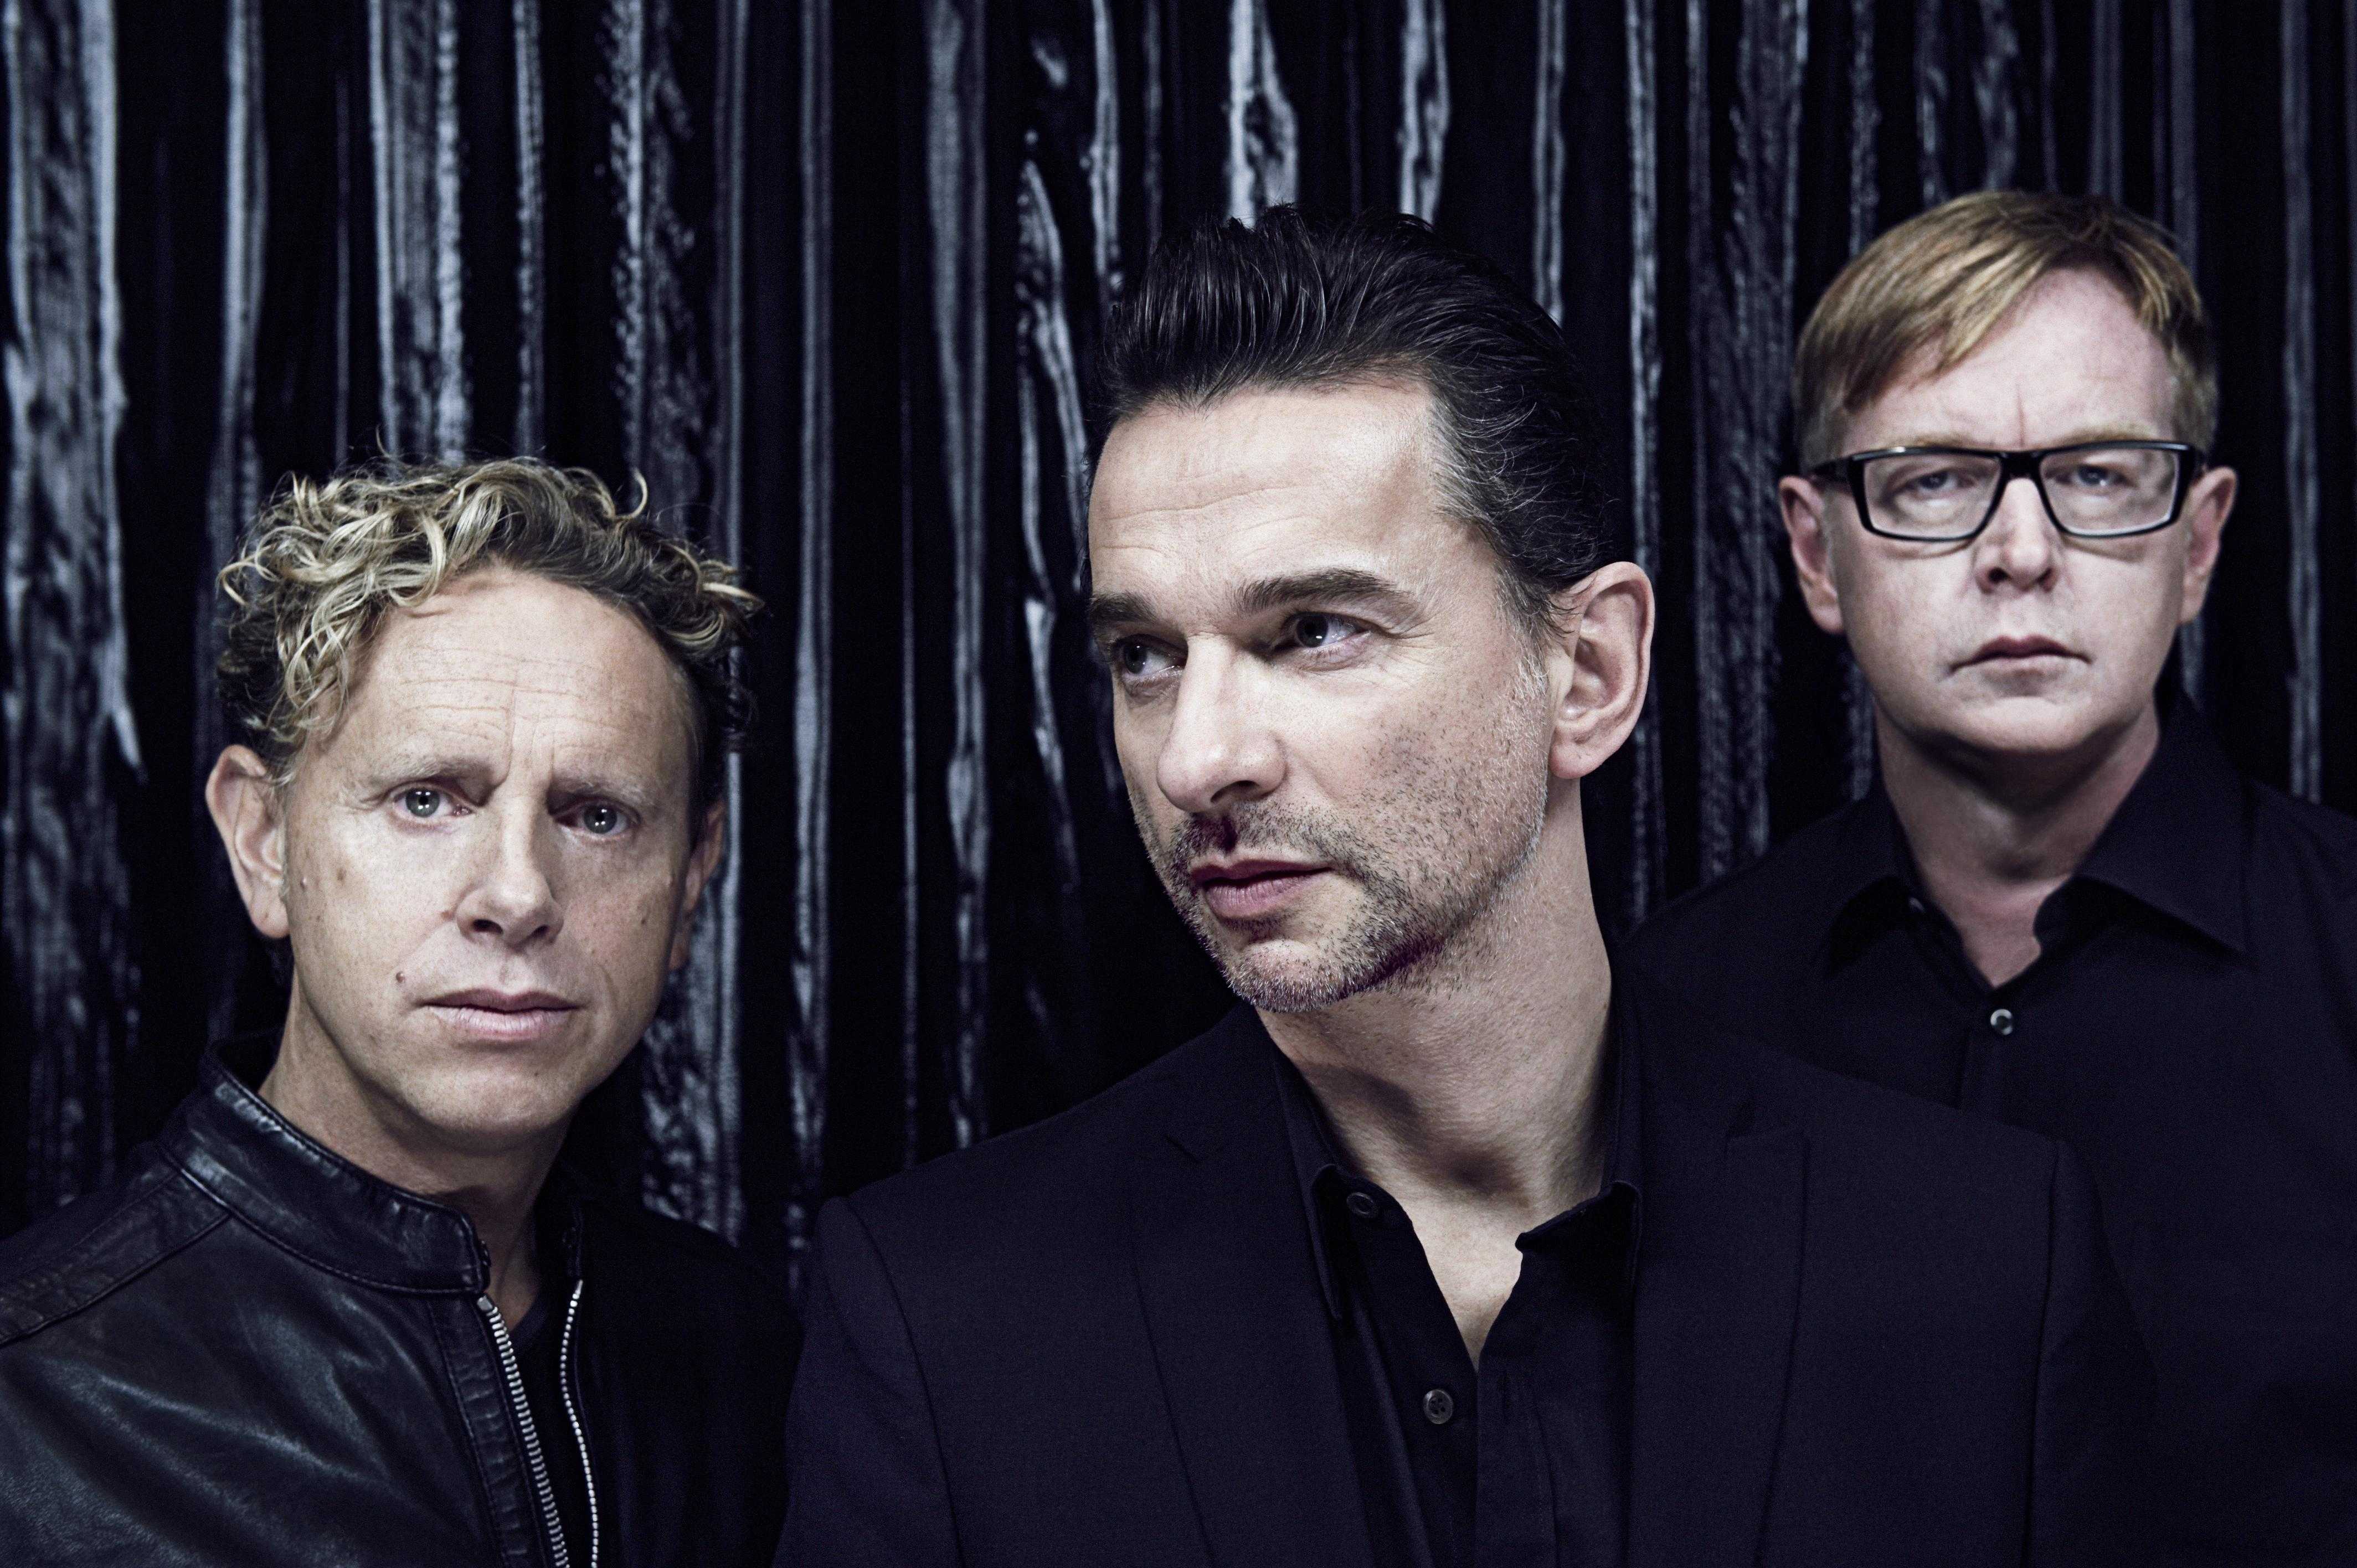 Группа depeche mode — история создания, состав, фото, новости, песни, альбомы, клипы, музыка 2022 - 24сми